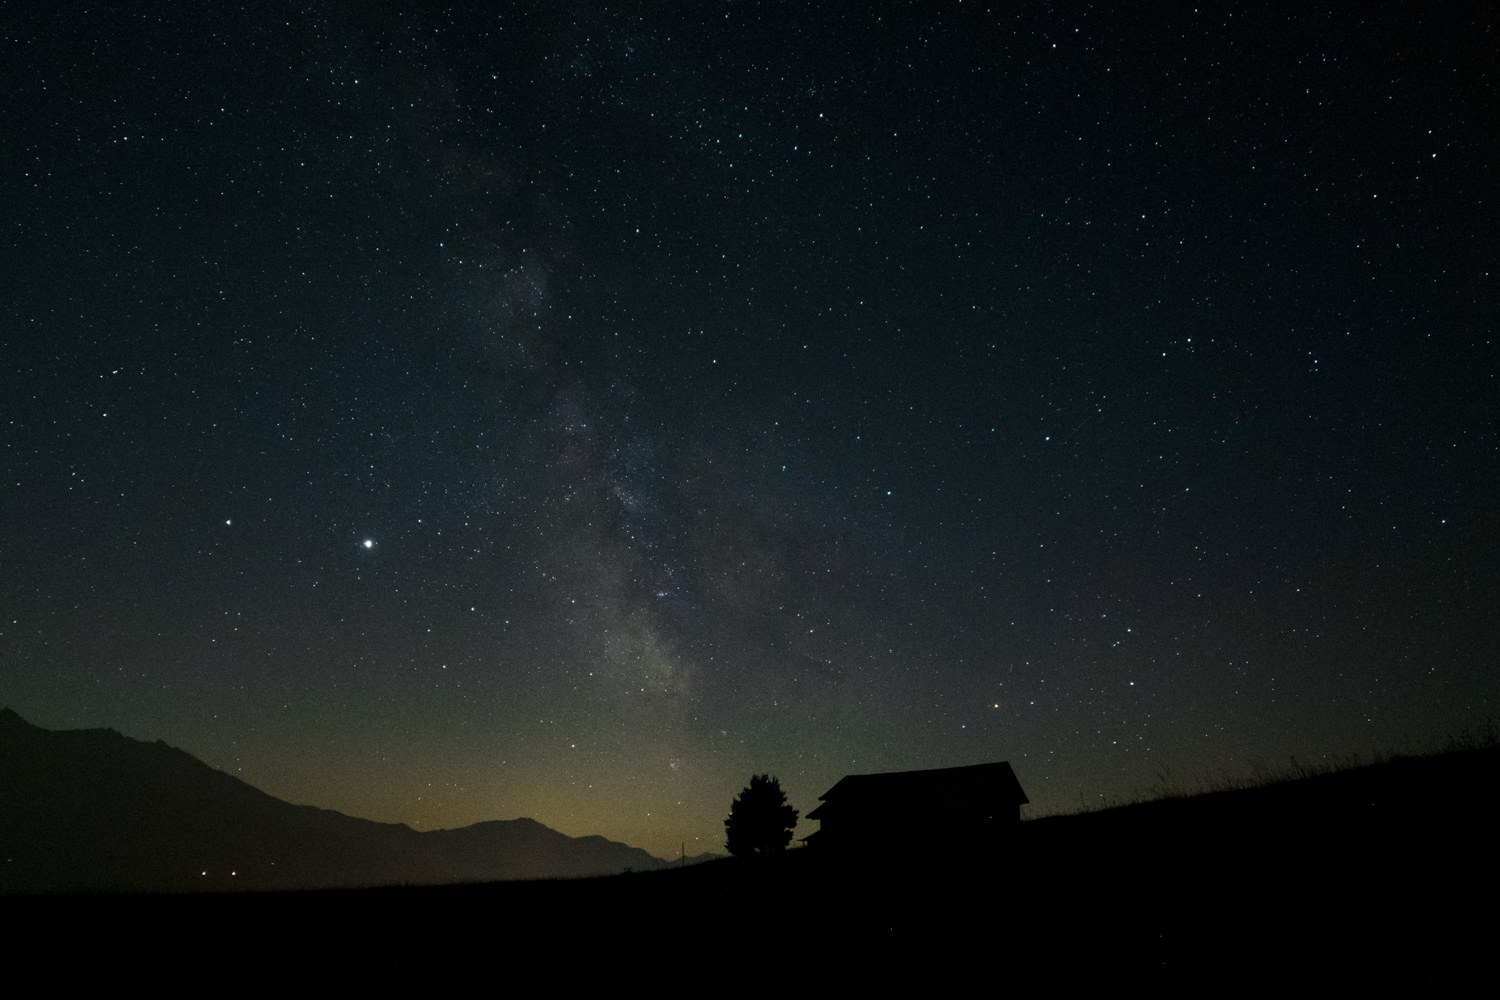 Fotografie des Nachthimmels in den Schweizer Bergen. Aufnahmeort Falera, Schweiz. Blick in das Zentrum der Milchstrasse.